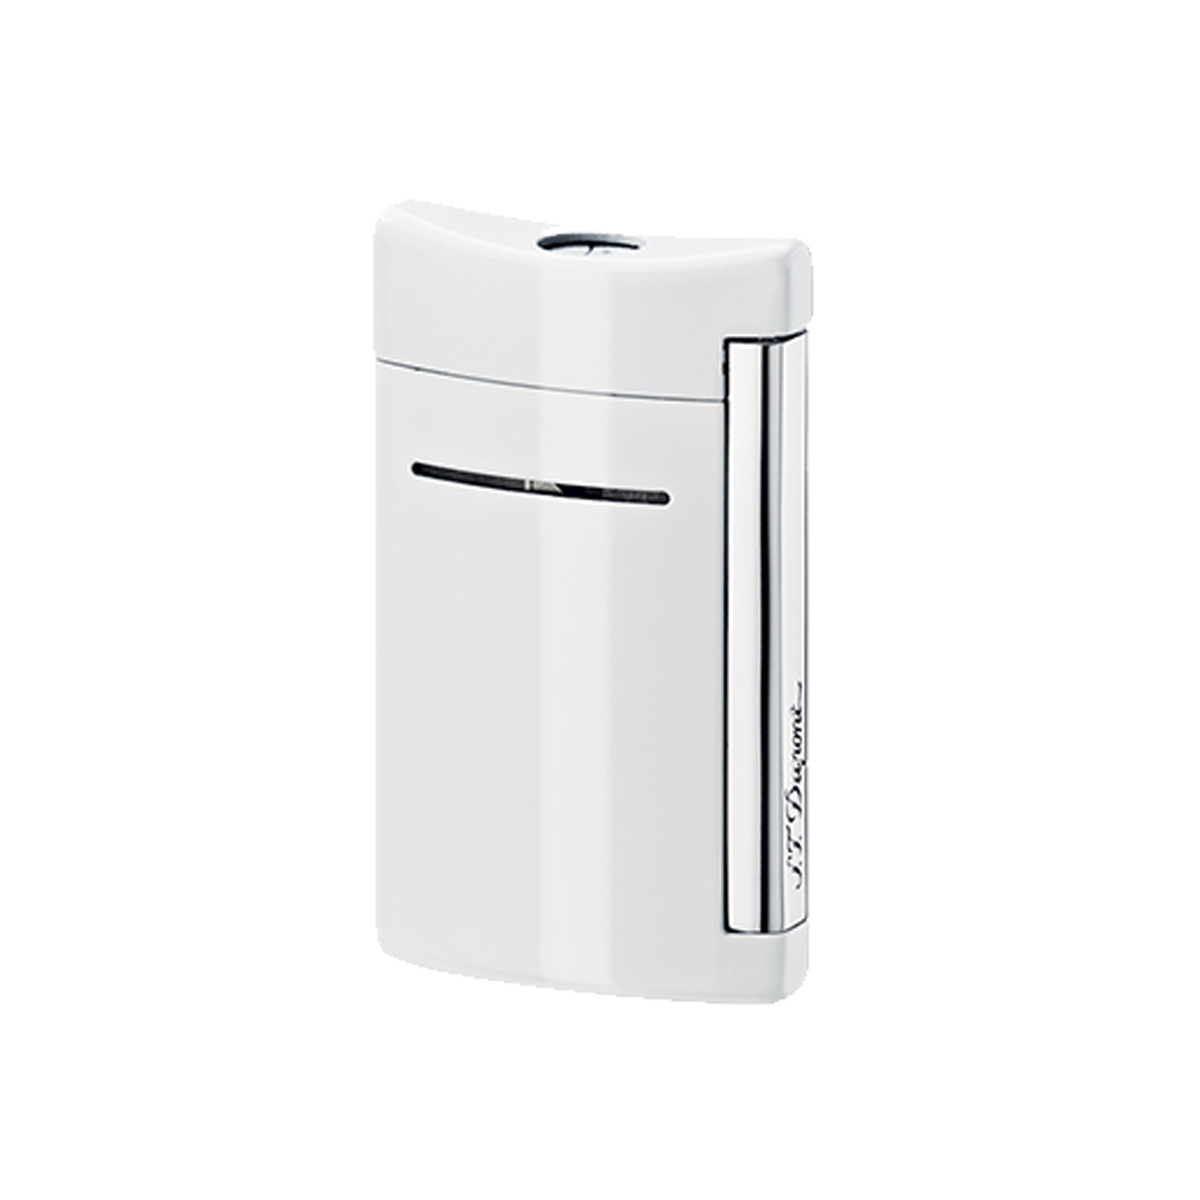 Зажигалка Minijet 10030 Цвет Белый Отделка натуральным лаком и хромом | S.T. Dupont